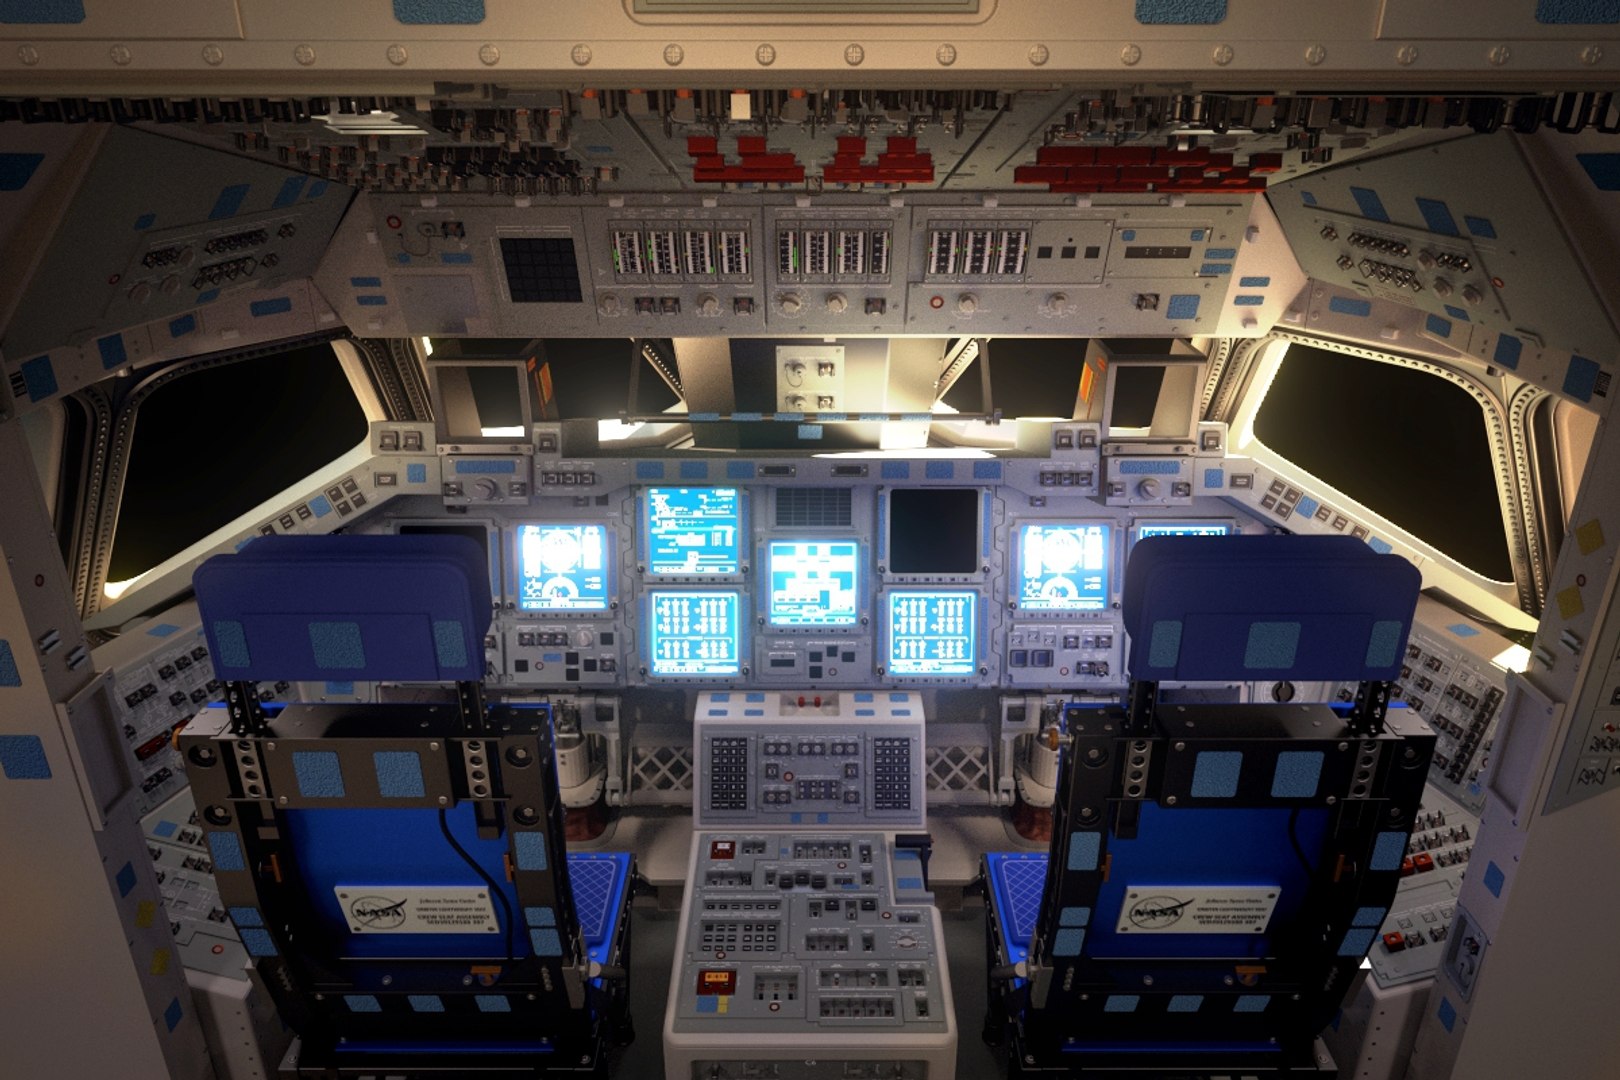 space shuttle parts cockpit